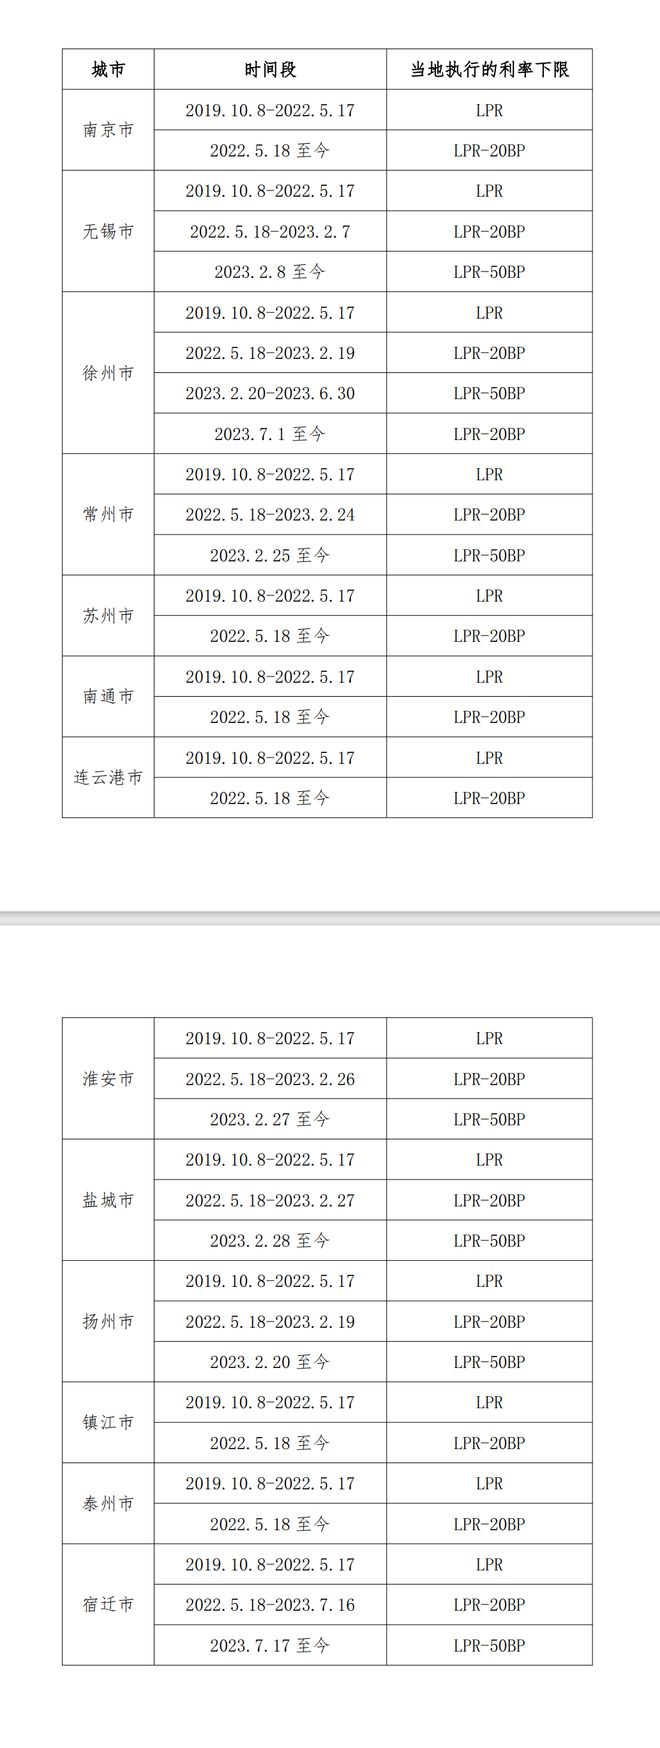 江苏：2022年5月18日至今 南京、苏州首套房贷执行的利率下限为LPR-20BP